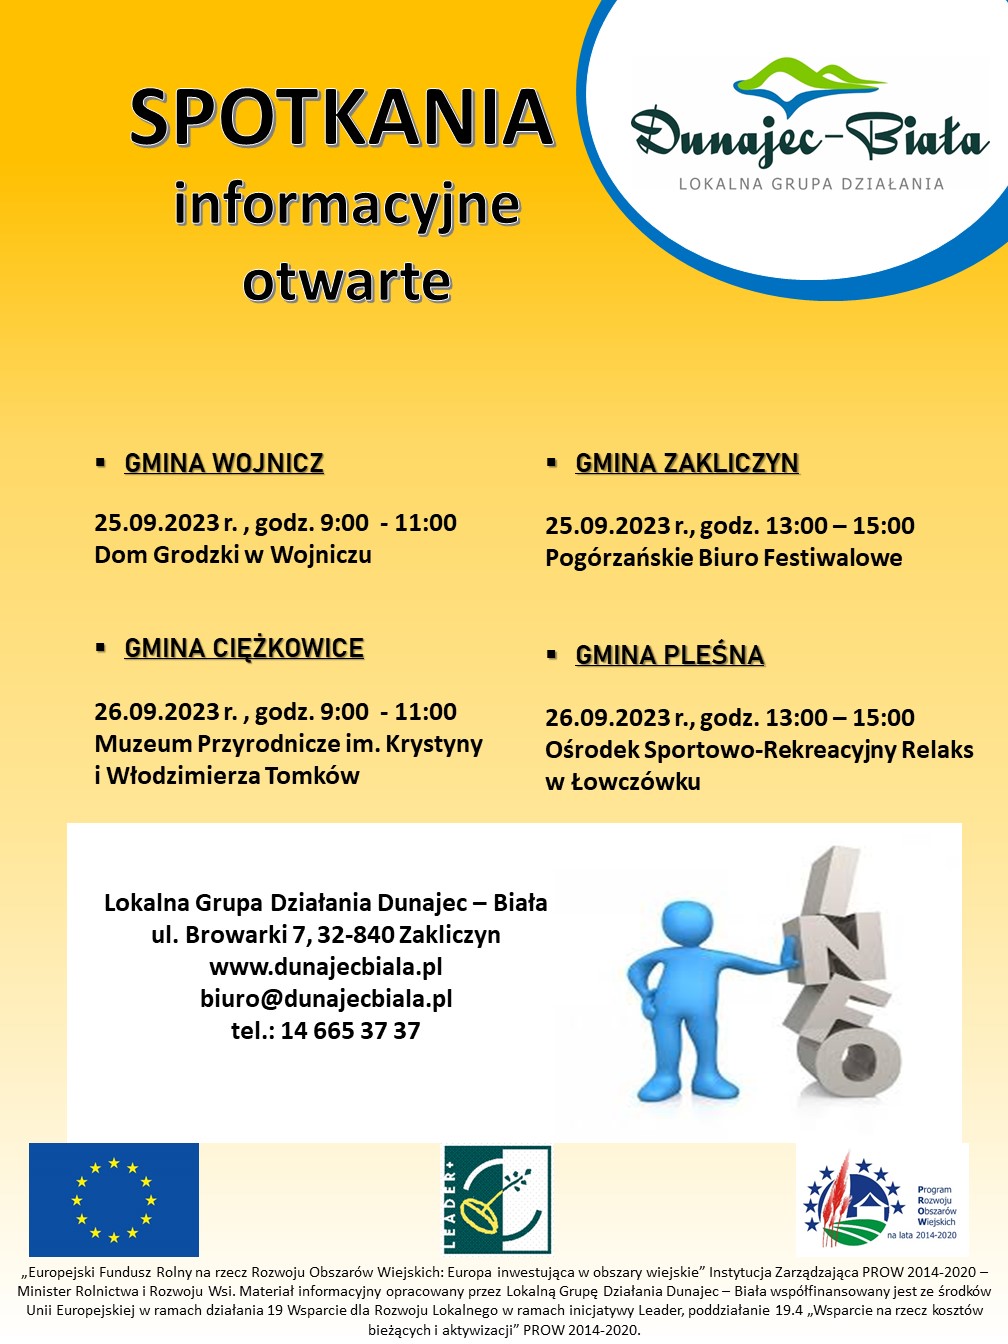 Spotkania informacyjne otwarte dla beneficjentów w Gminach  z obszaru Lokalnej Grupy Działania Dunajec-Biała